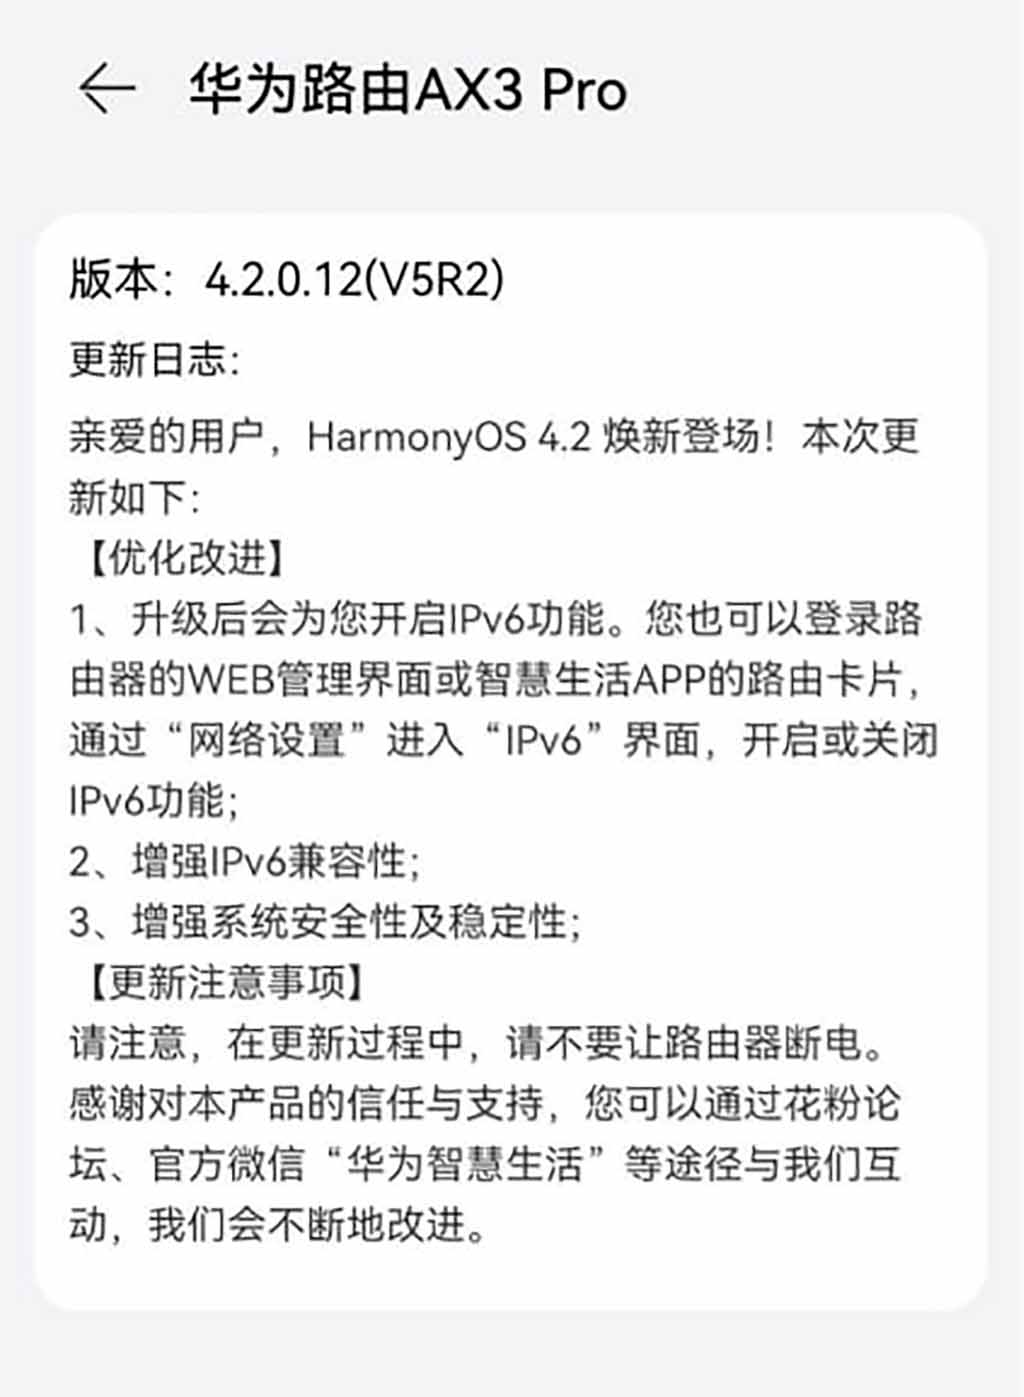 Huawei AX3 Pro HarmonyOS 4.2 update